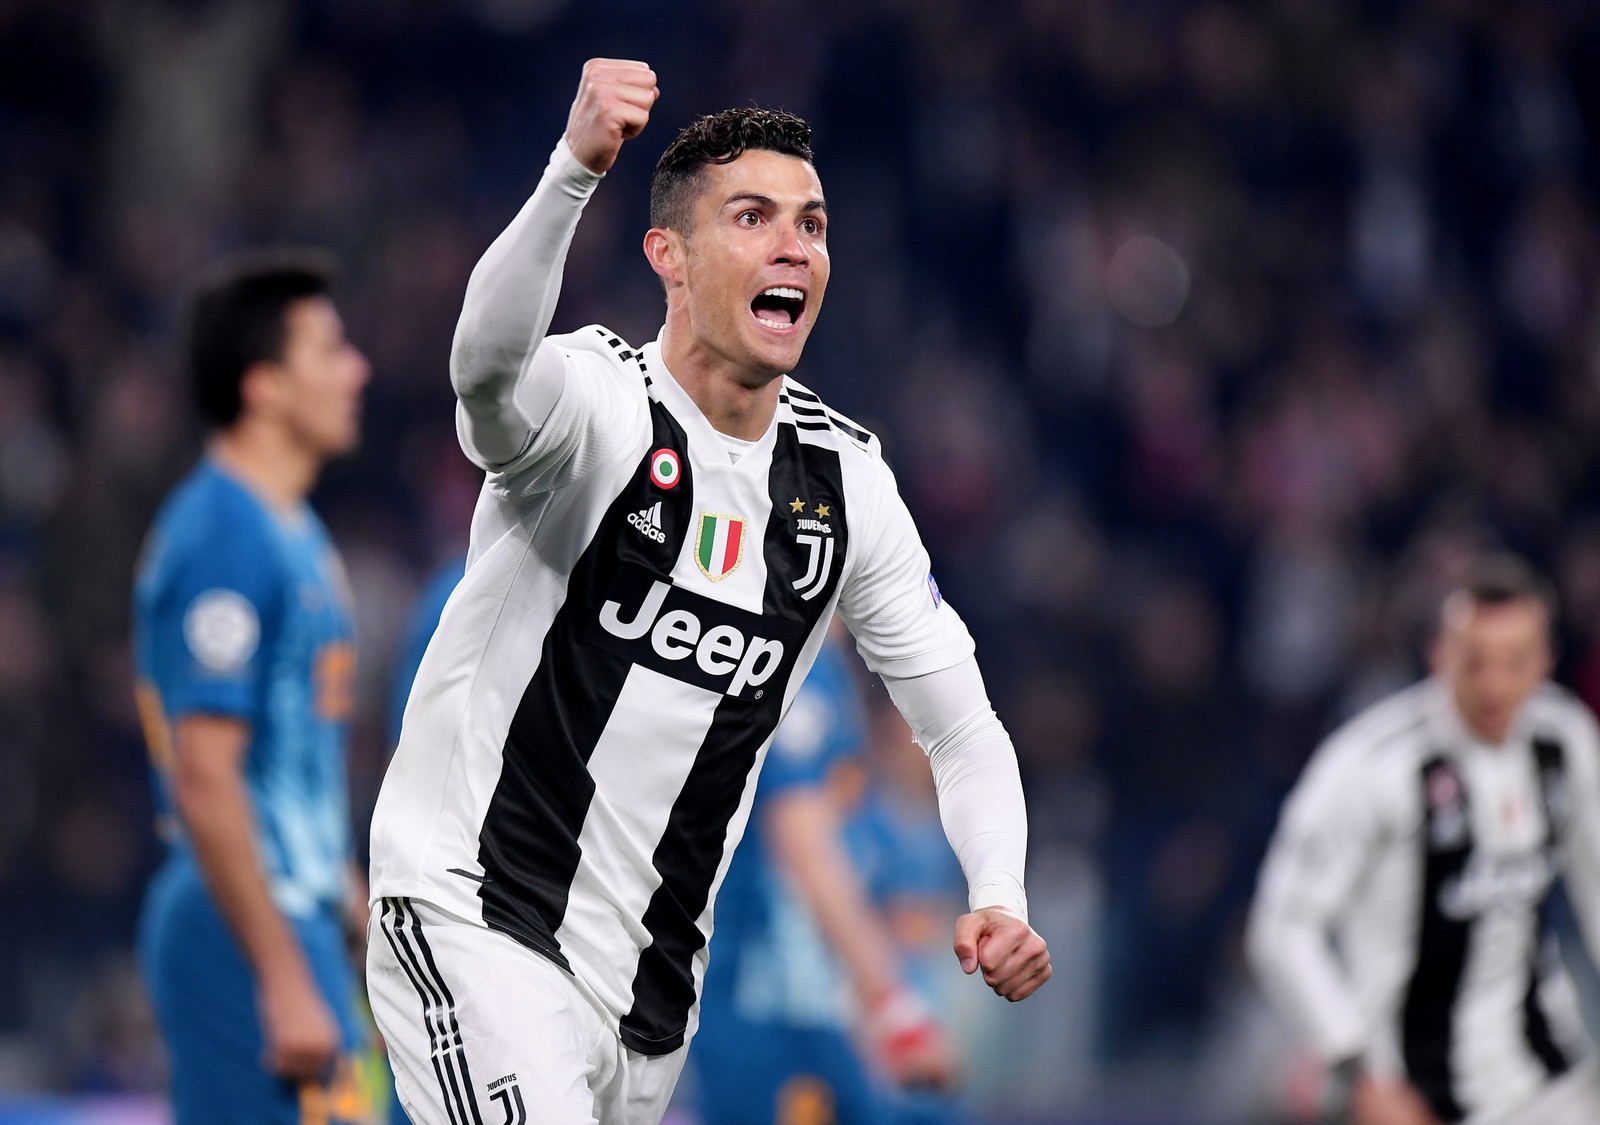 CRISTIANO RONALDO - O português Cristiano Ronaldo fez 140 gols em suas passagens por Manchester United, Real Madrid e Juventus